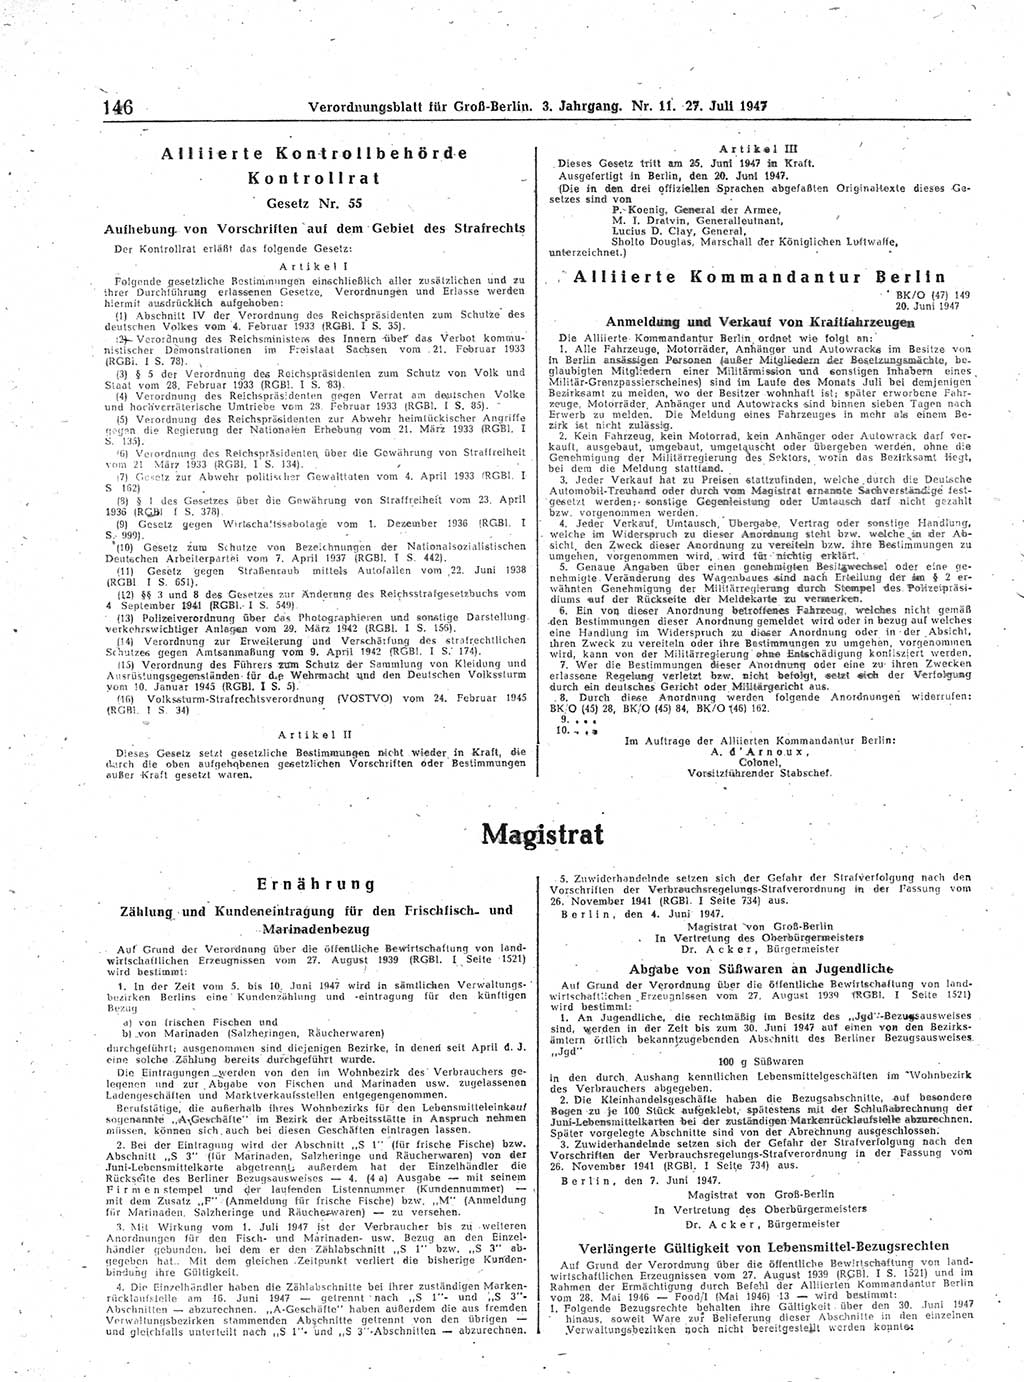 Verordnungsblatt (VOBl.) für Groß-Berlin 1947, Seite 146 (VOBl. Bln. 1947, S. 146)